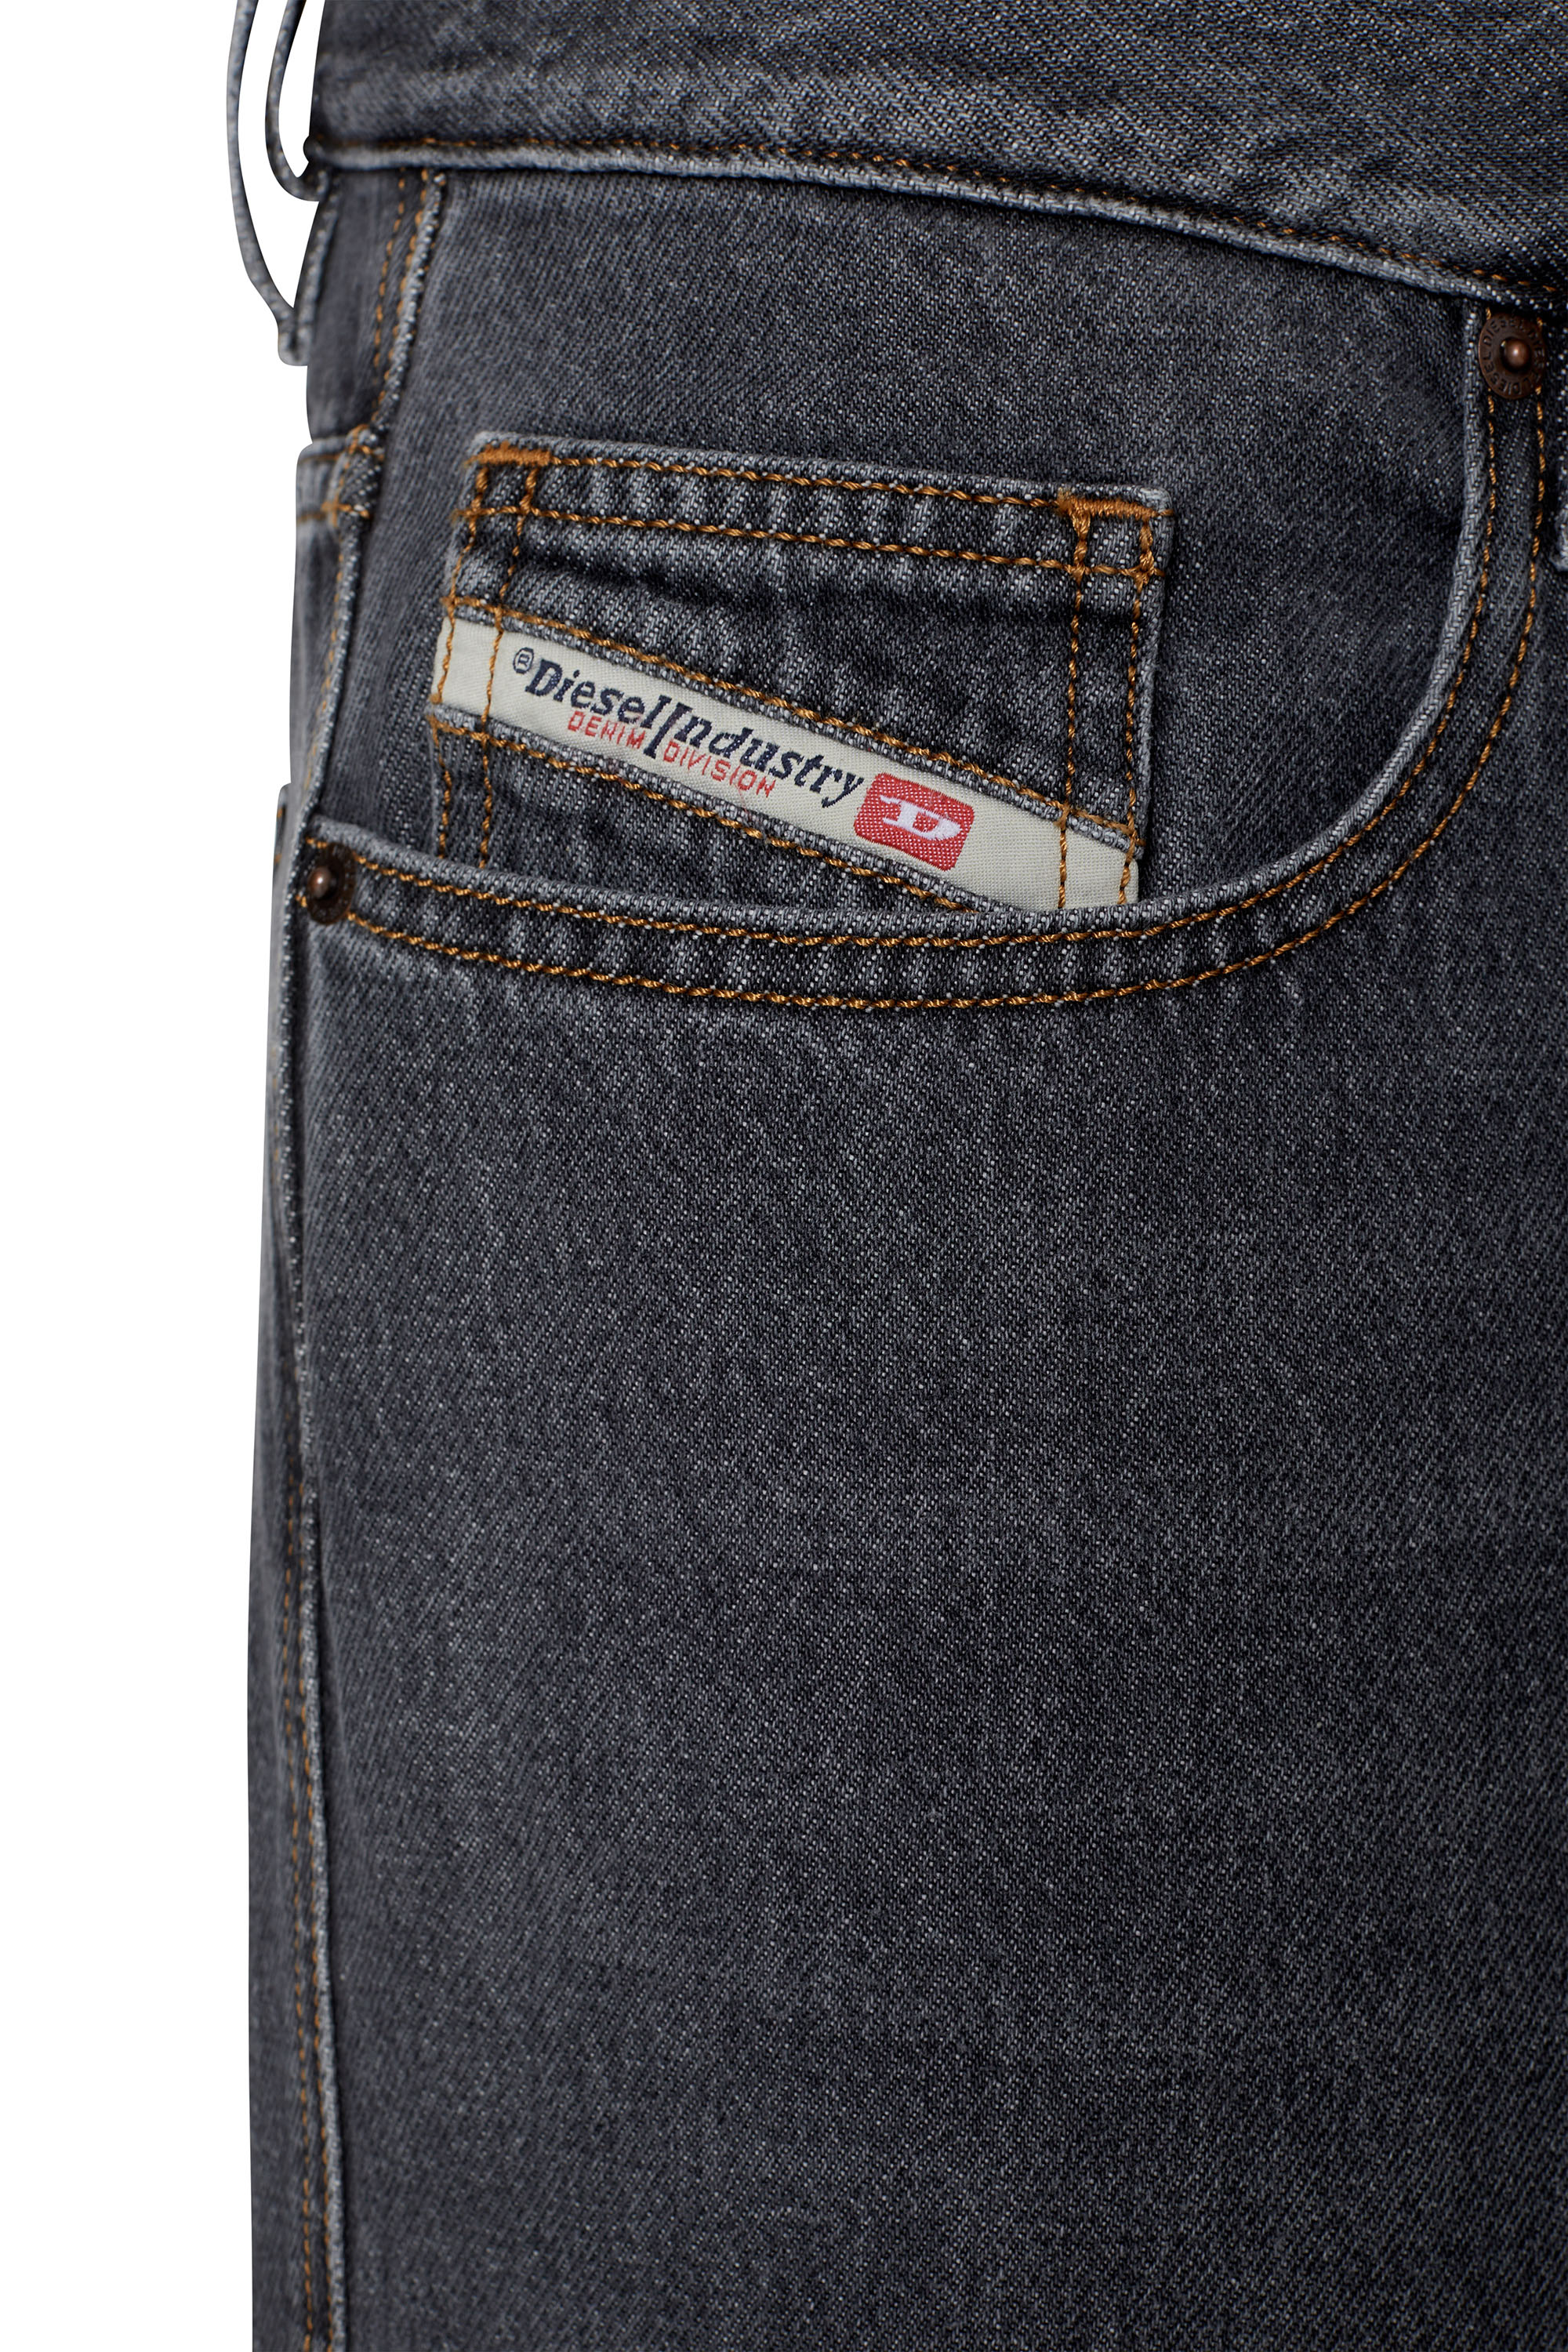 Mens Straight Jeans | Diesel Online Store